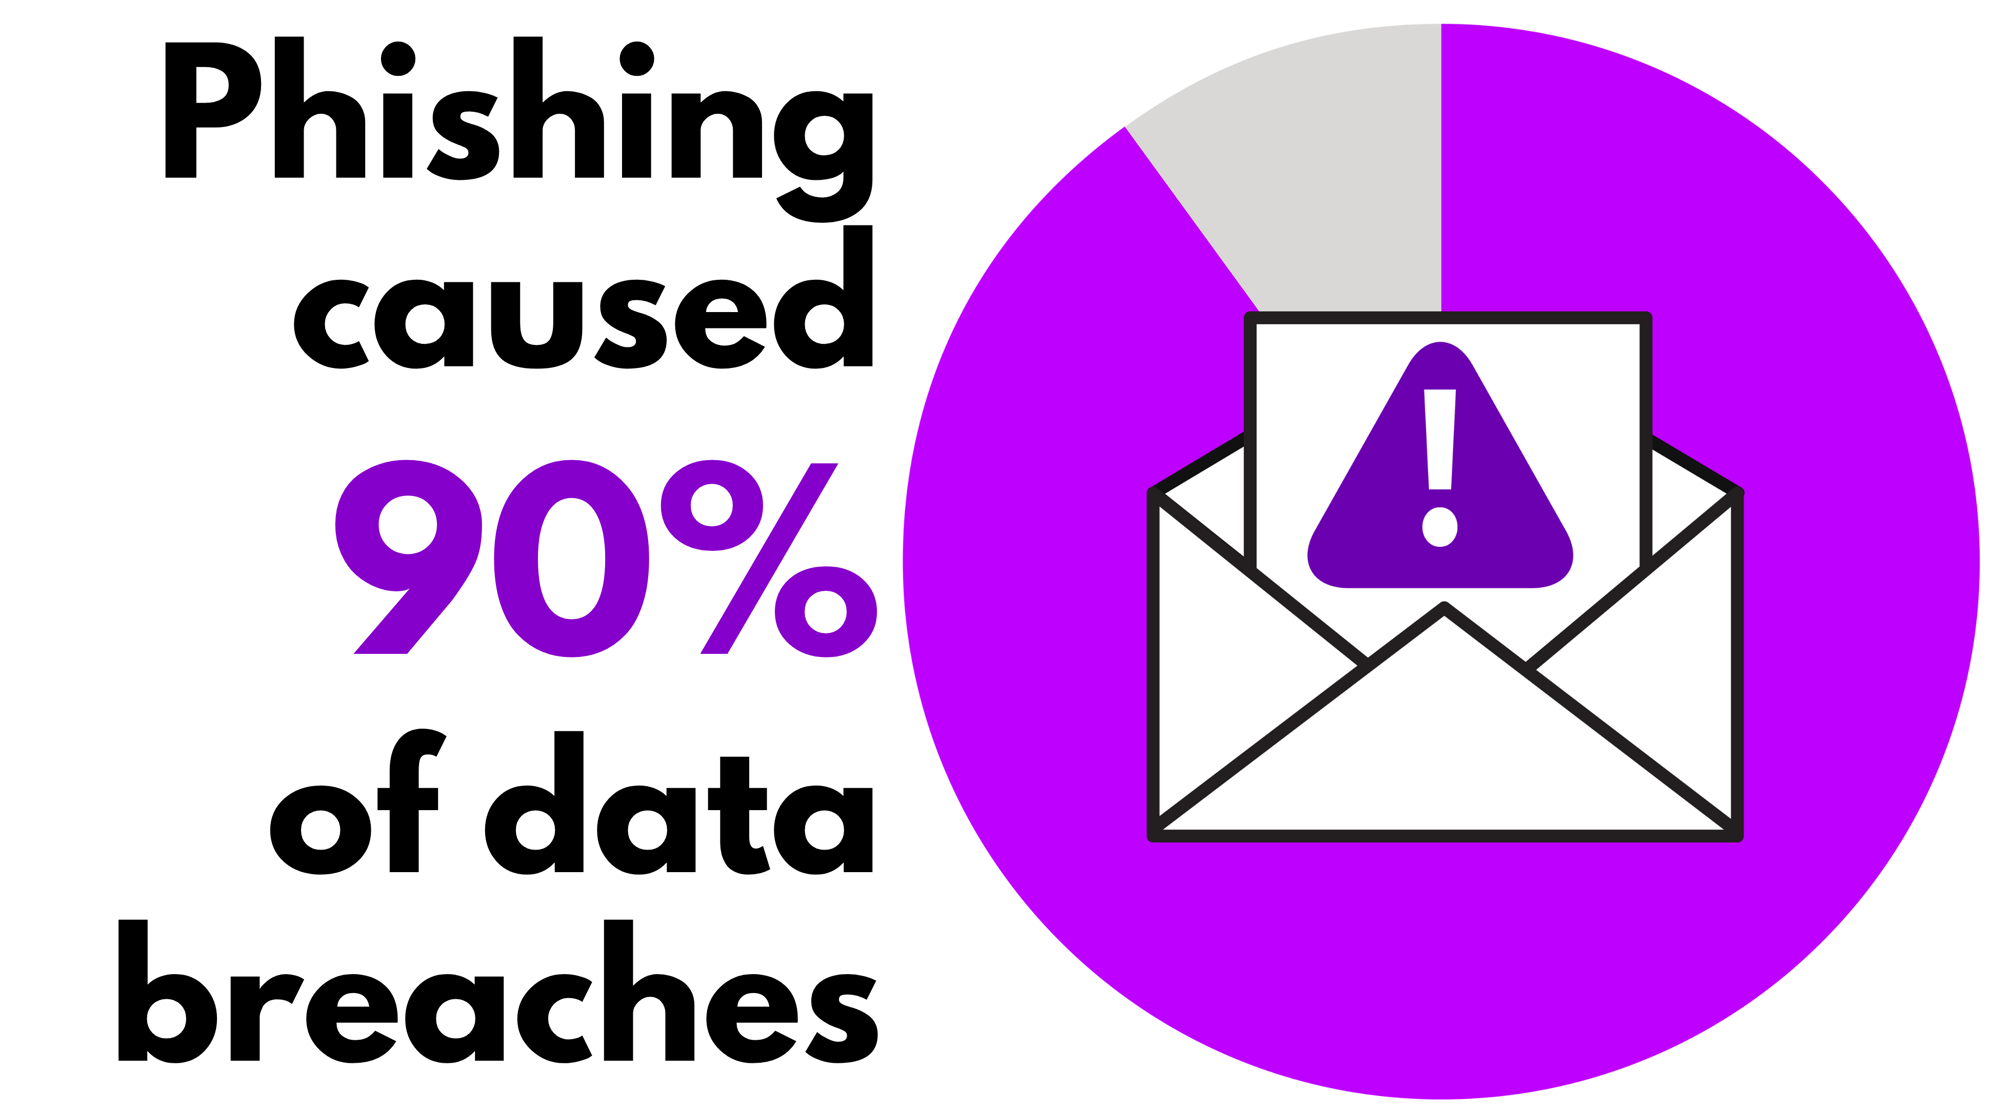 Phishing caused 90% of data breaches